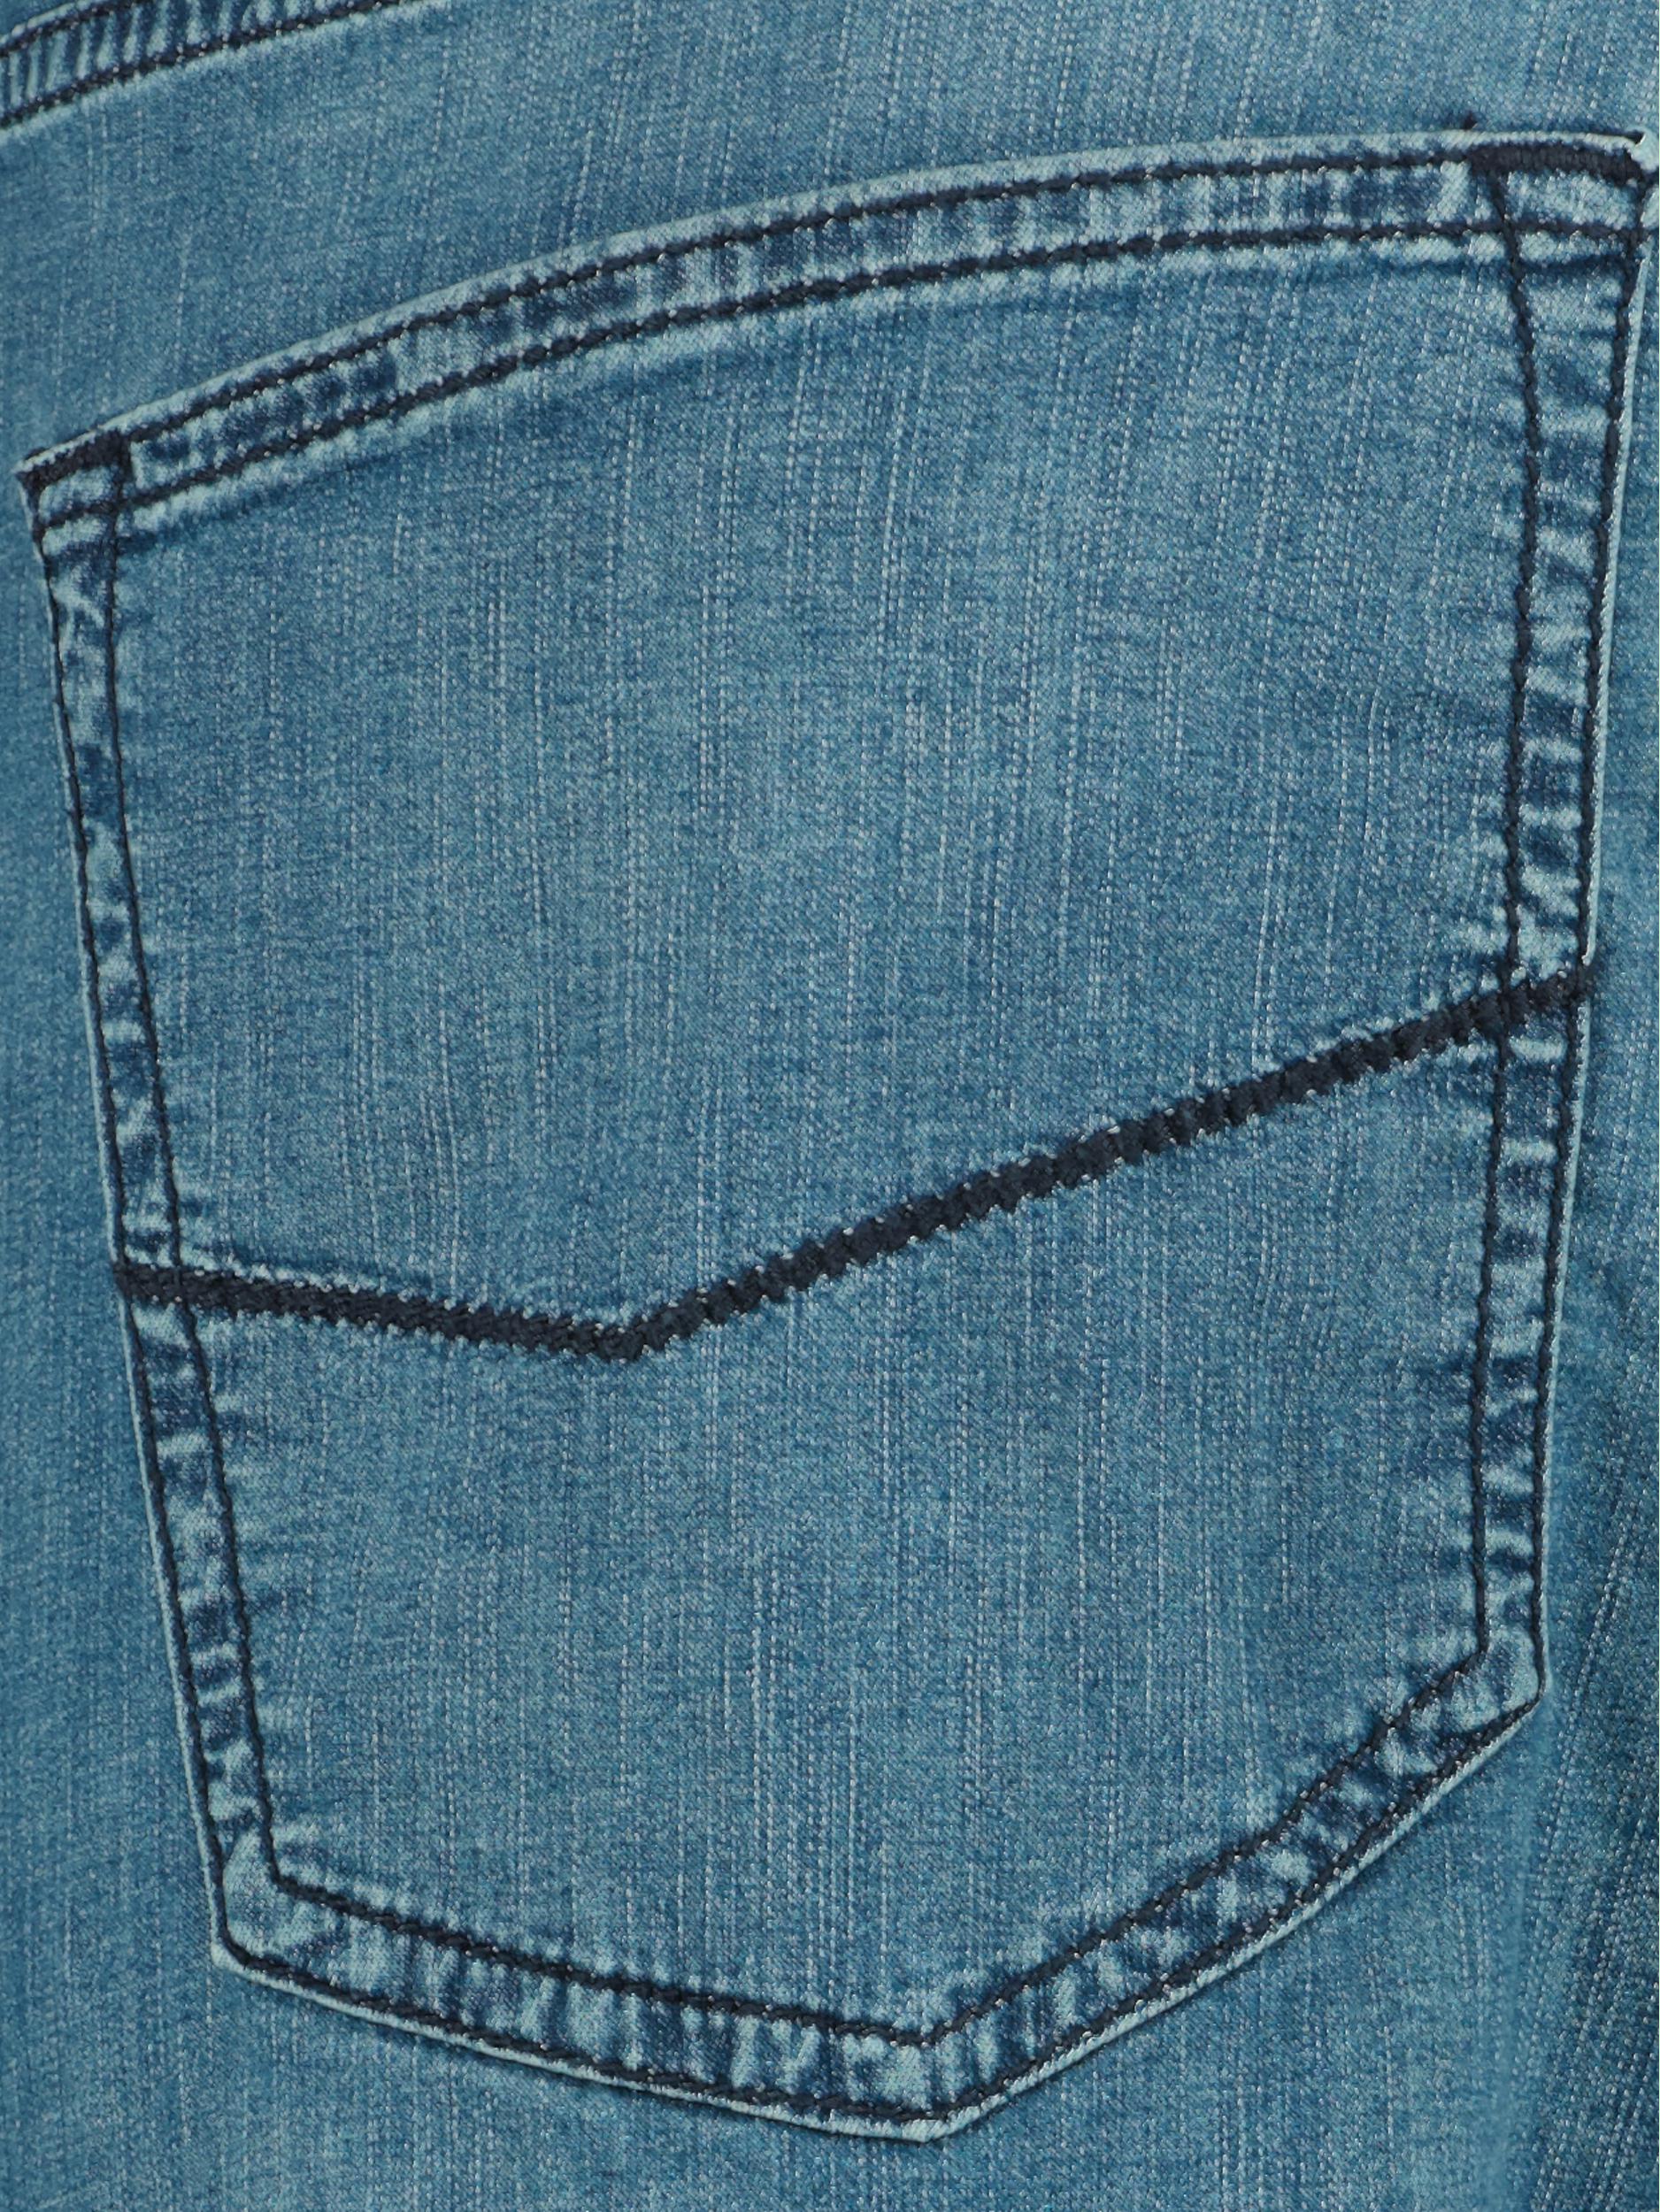 Pierre Cardin 5-Pocket Jeans Blauw  C7 30910.7335/6847